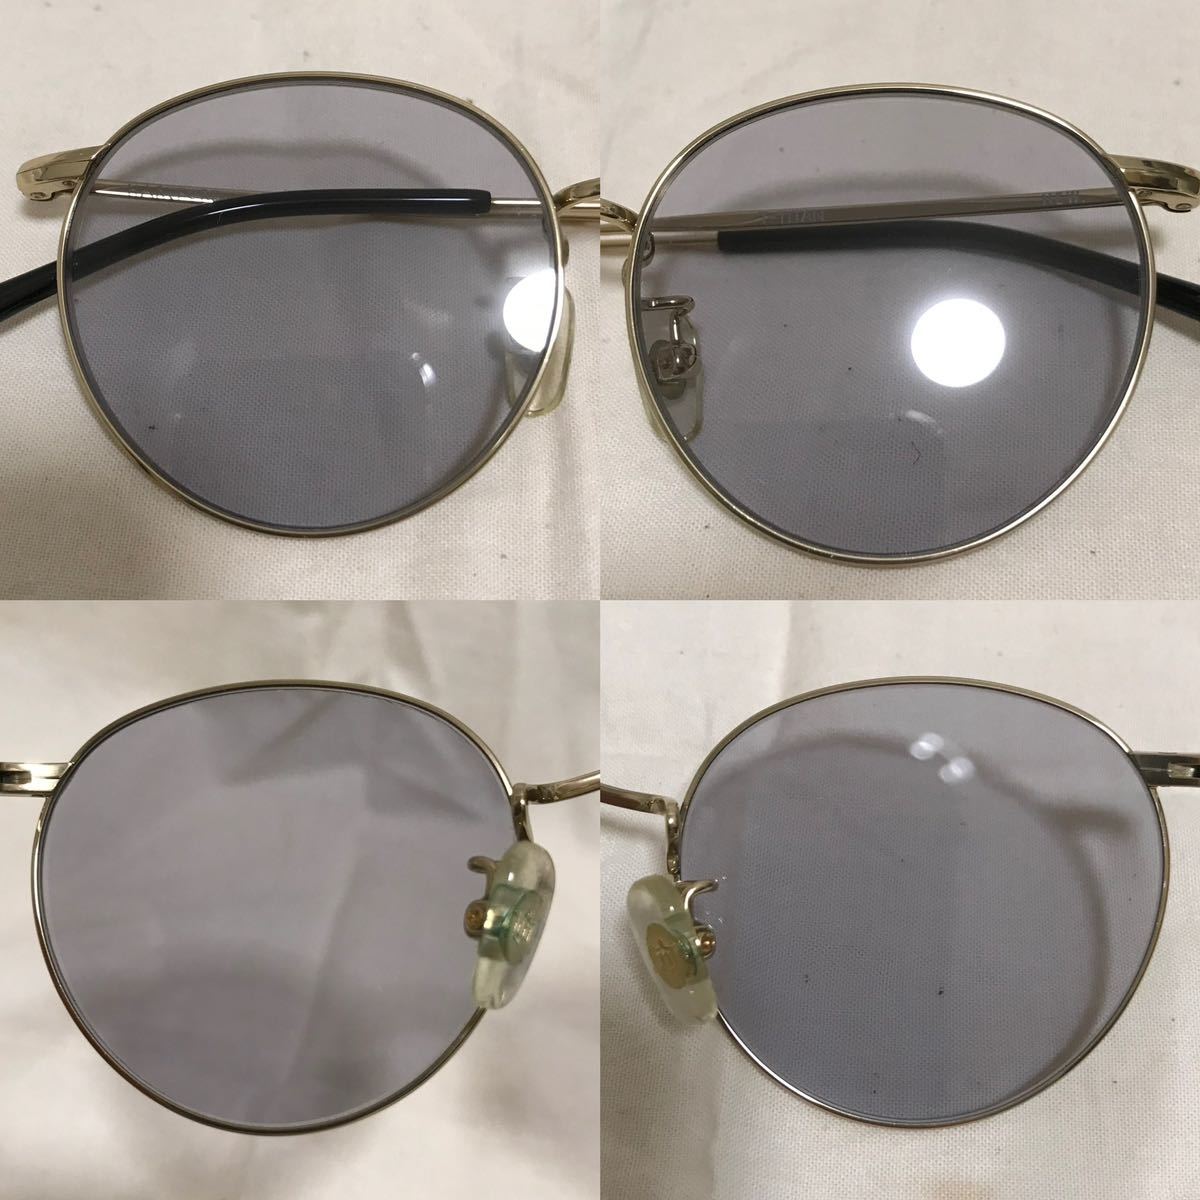 NEW. HARTFORD NEWMAN ニュー ハートフォード ニューマン メタル チタン フレーム サングラス 眼鏡 メガネ めがね ゴールド カラー レンズ